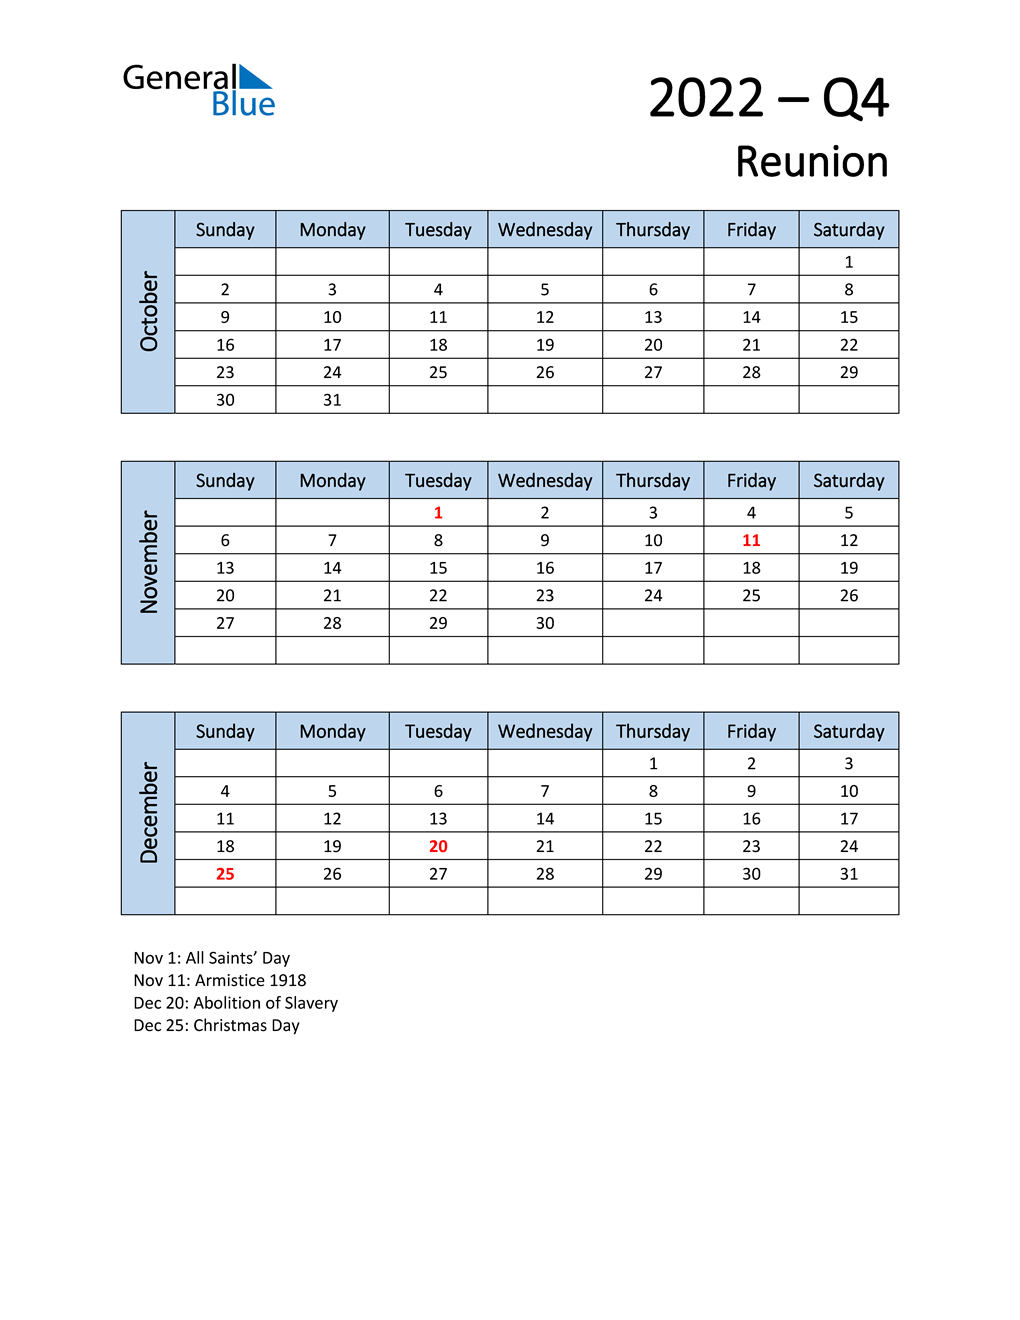  Free Q4 2022 Calendar for Reunion